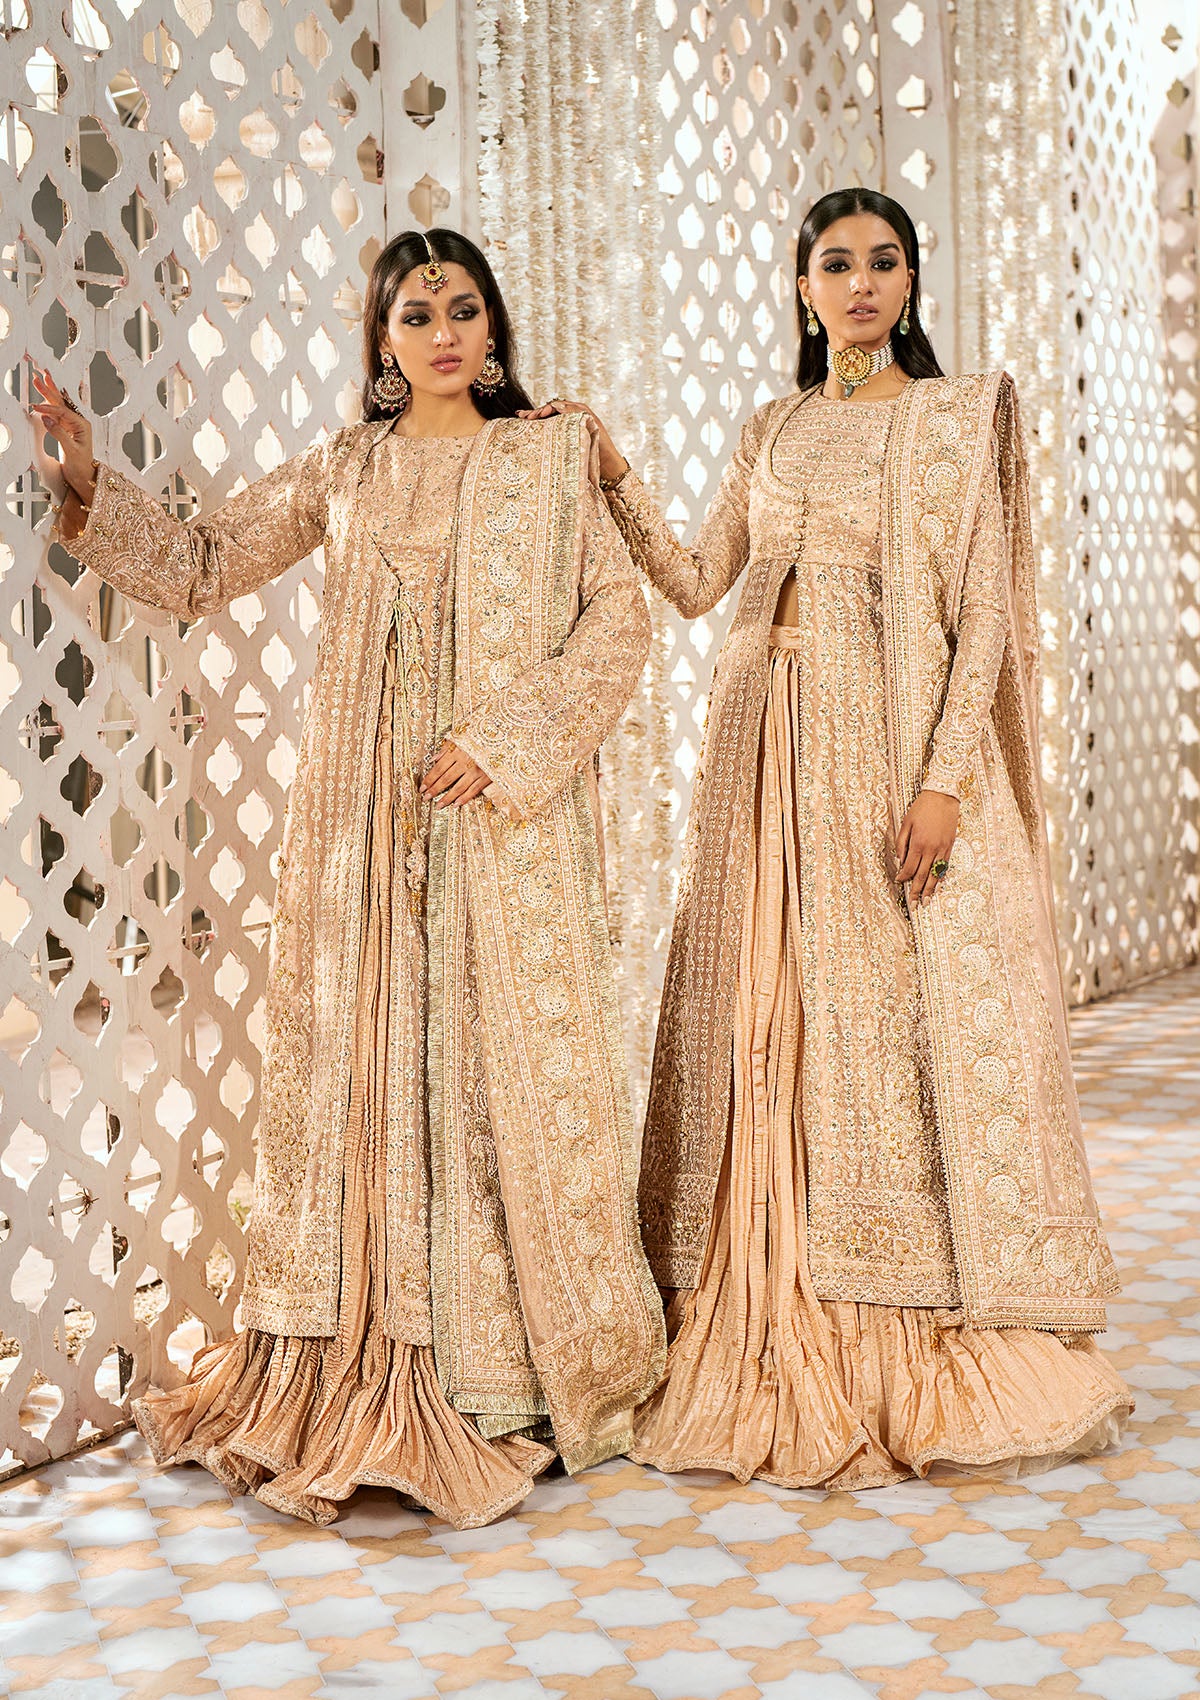 Pakistani Bridal Dress in Choli Lehenga Design #BS392 | Asian bridal  dresses, Bridal dress design, Indian bridal dress